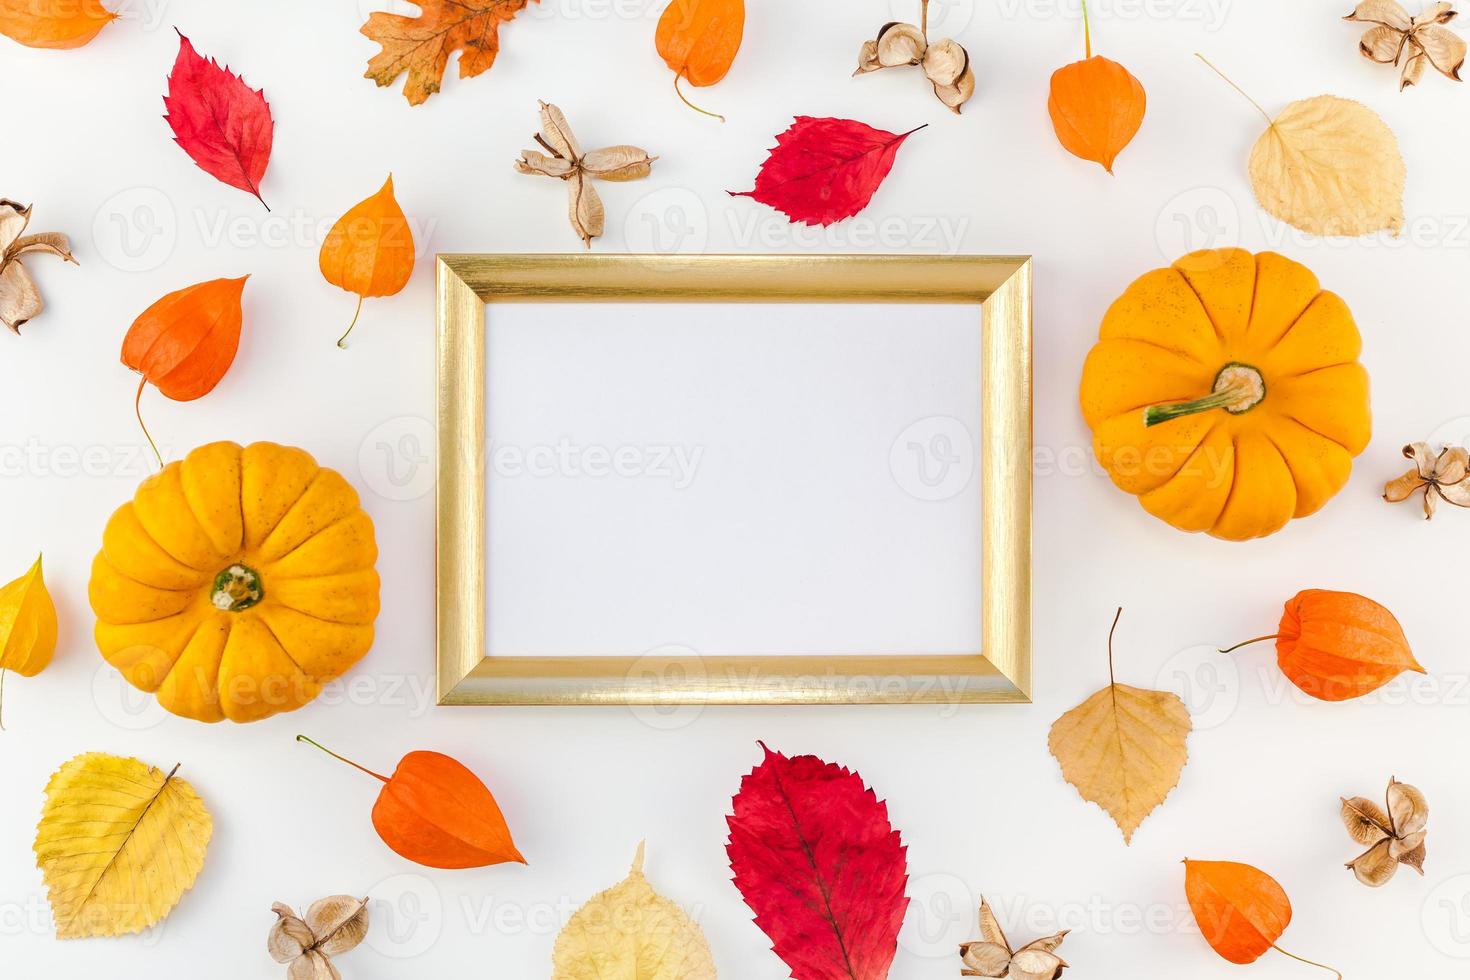 cadre fait de citrouilles fleurs et feuilles séchées photo